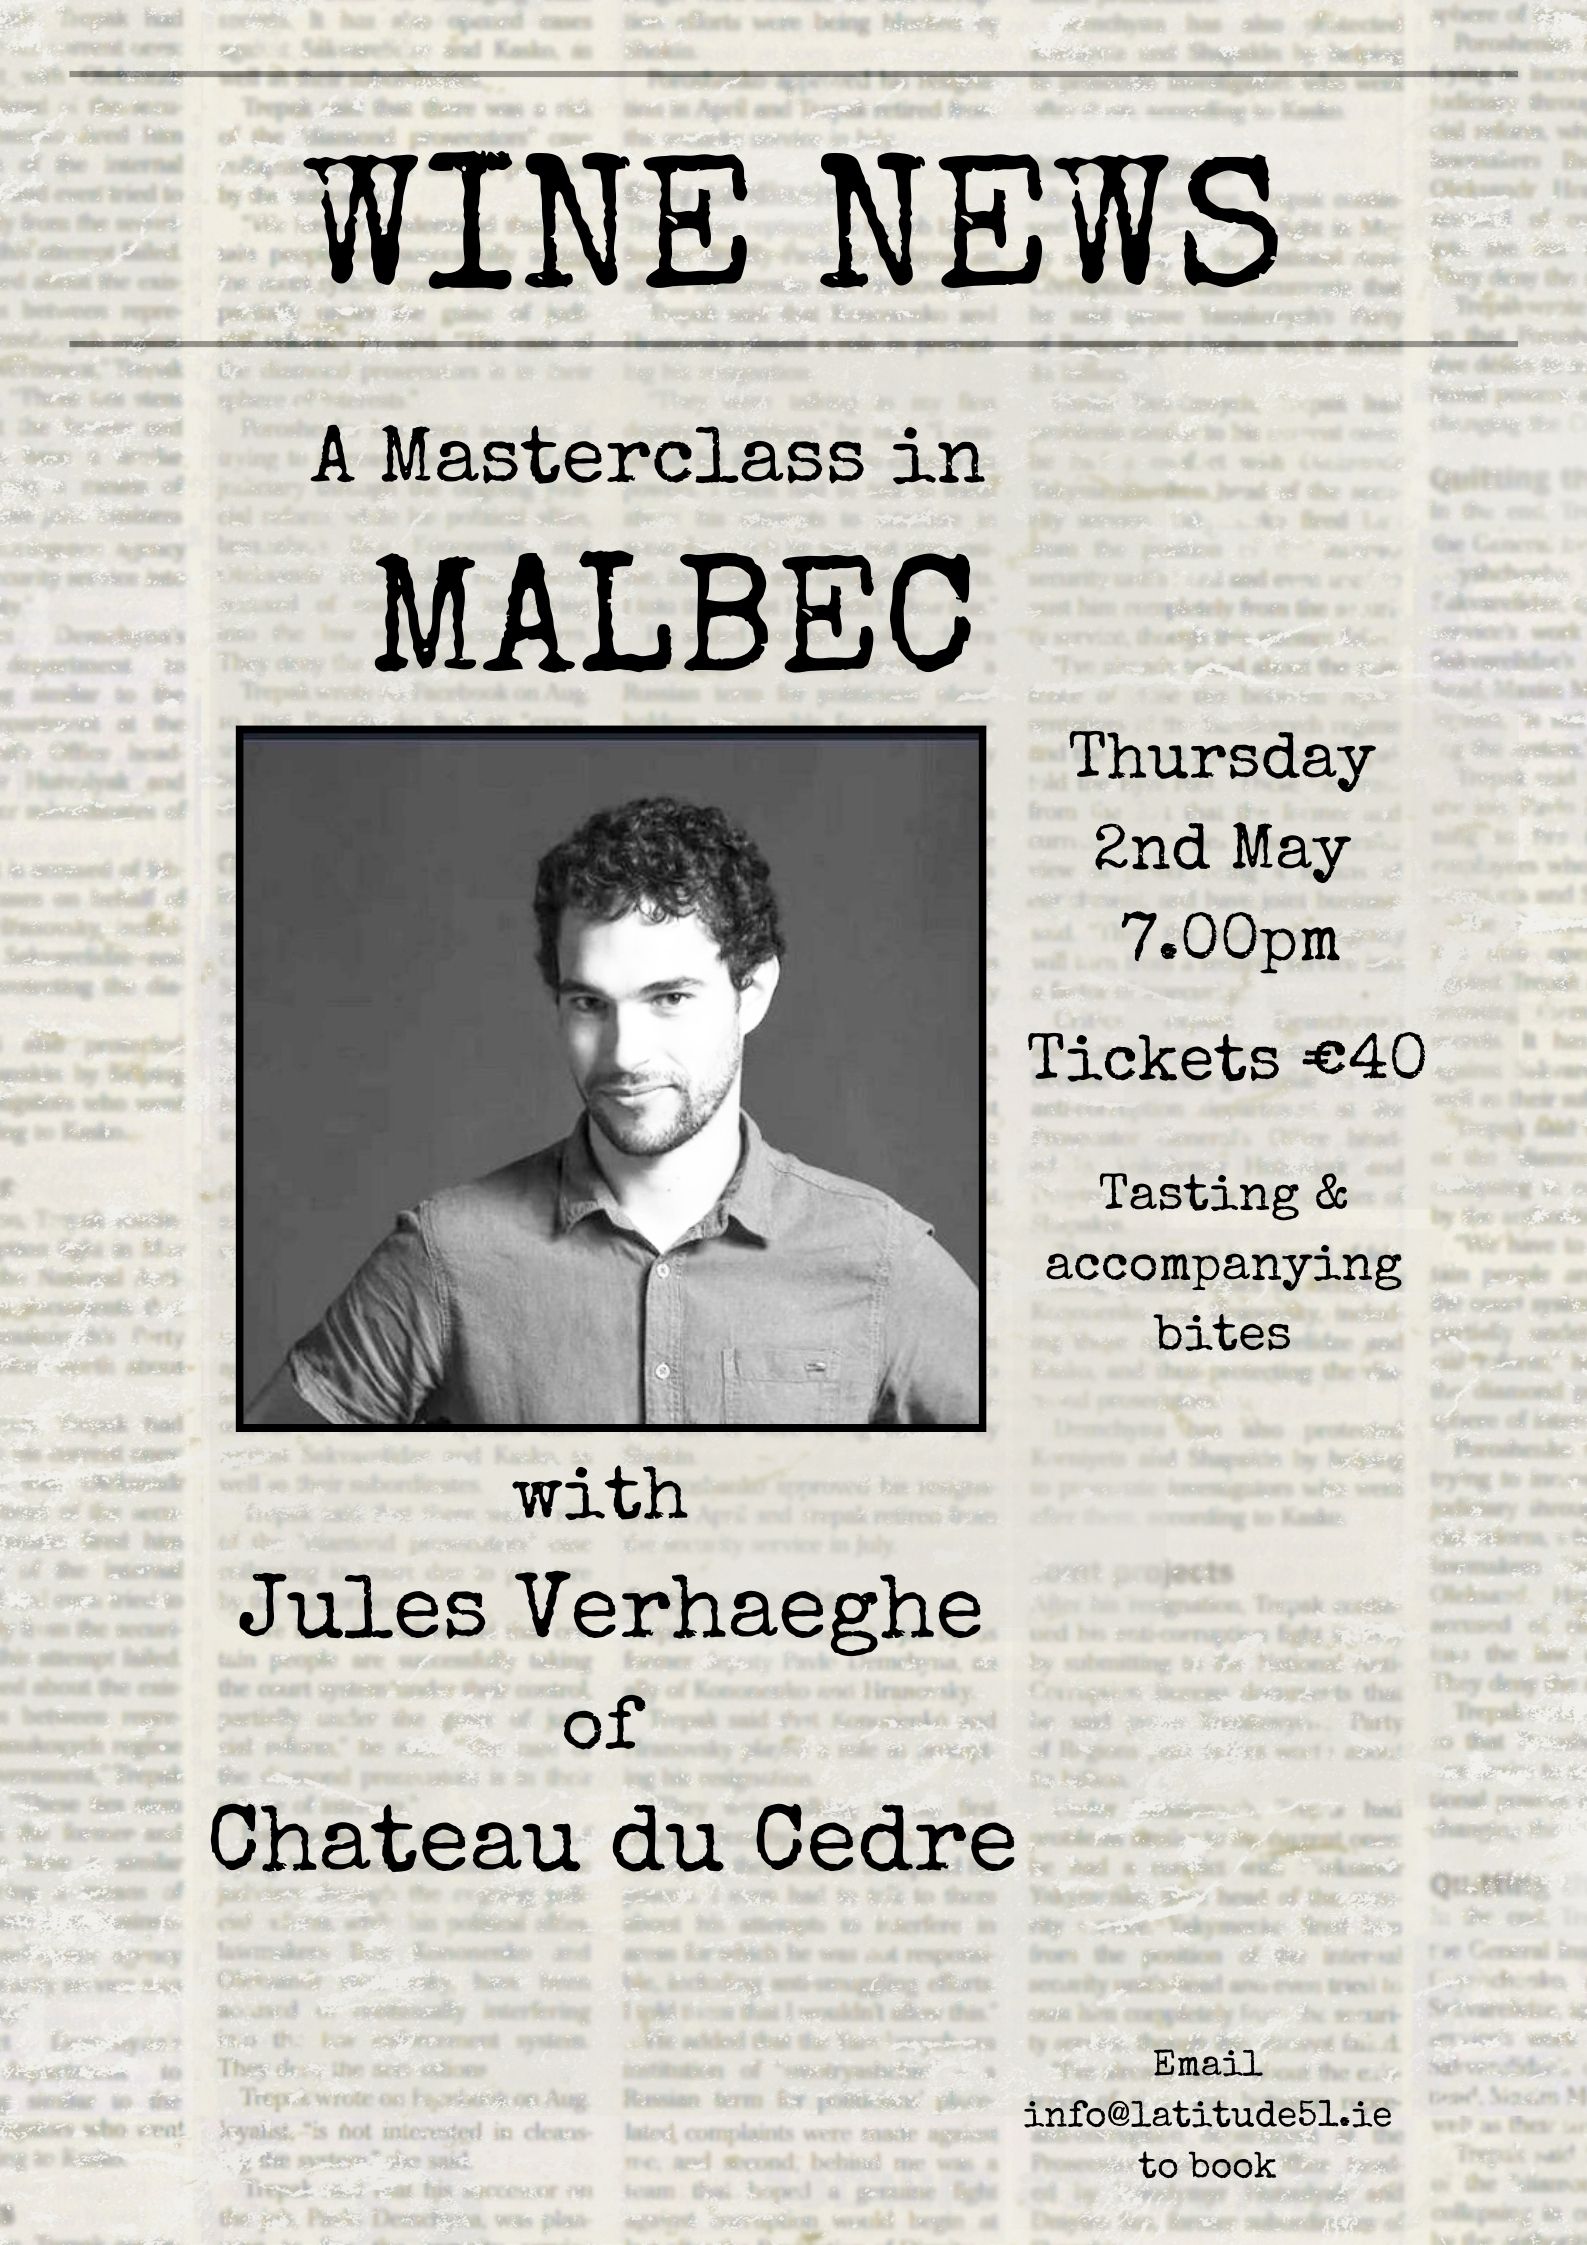 A Masterclass in Malbec